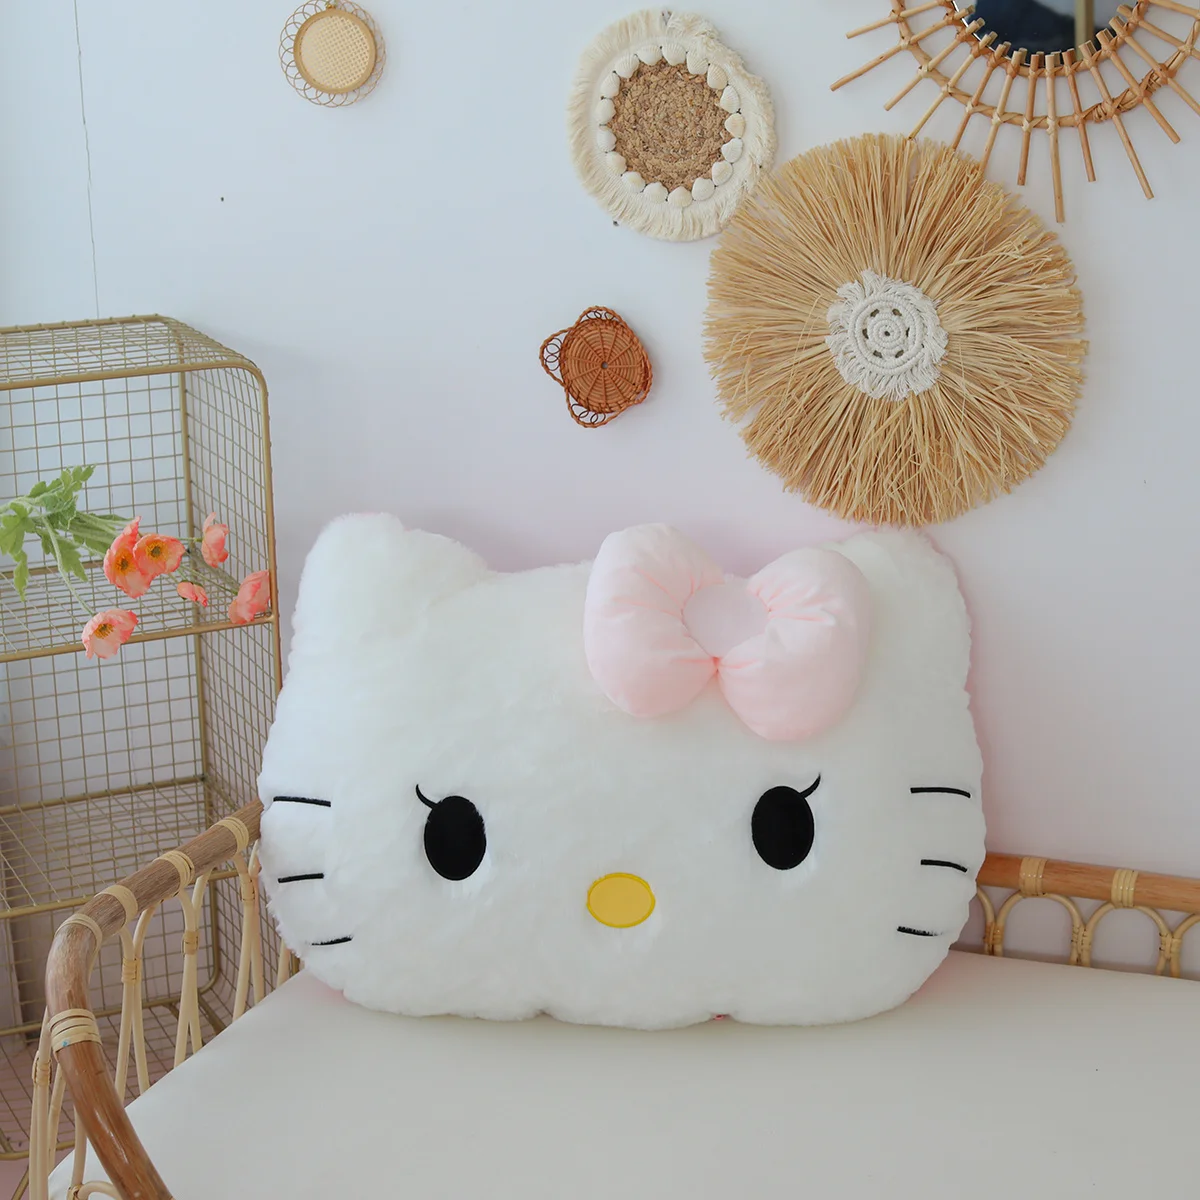 Sanrio hello kitty brinquedo de pelúcia macio fofo travesseiro confortável voltar almofada sofá decorativo travesseiro abraço plushies presentes de natal para a menina